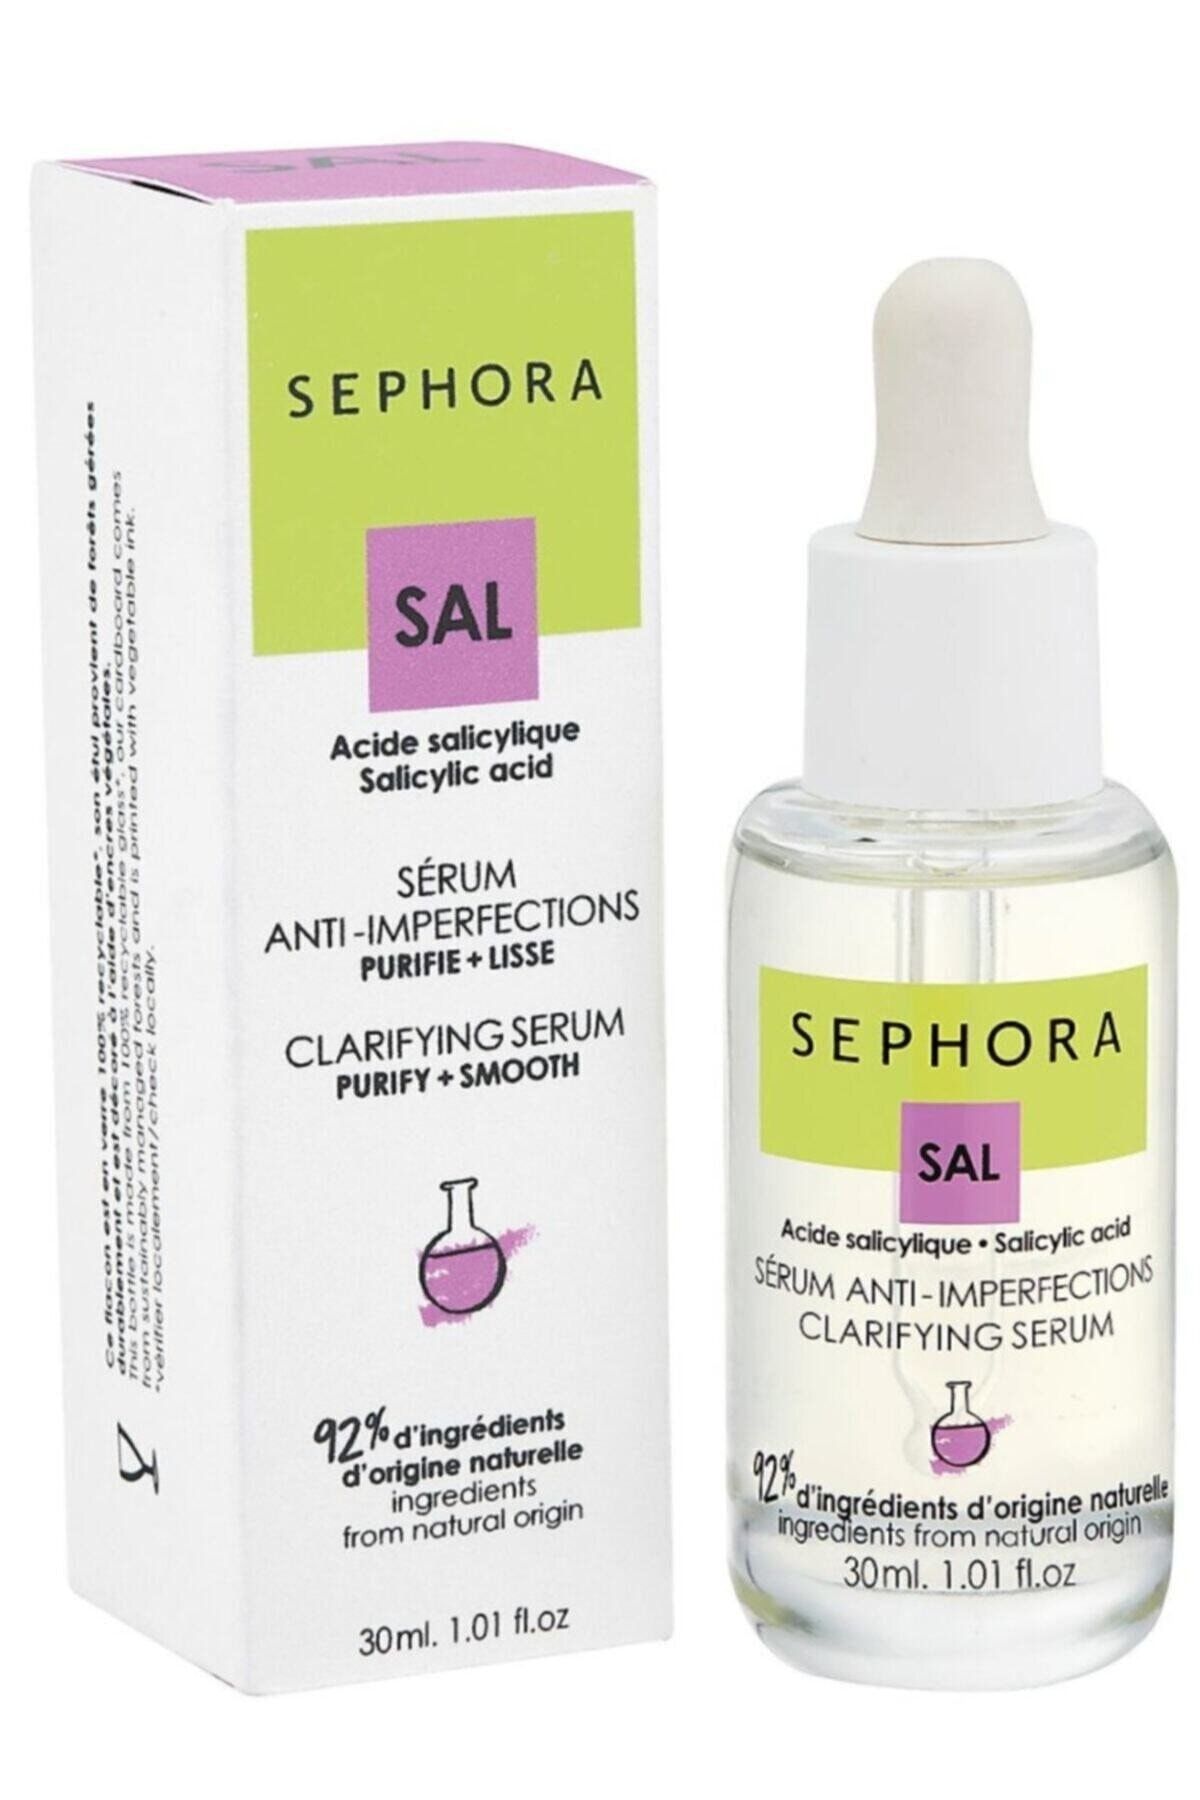 Sephora Arındırıcı Pürüzsüzleştirici Salisilik Asit Içeren Serum Anti-ımperfections Clarifying 30ml